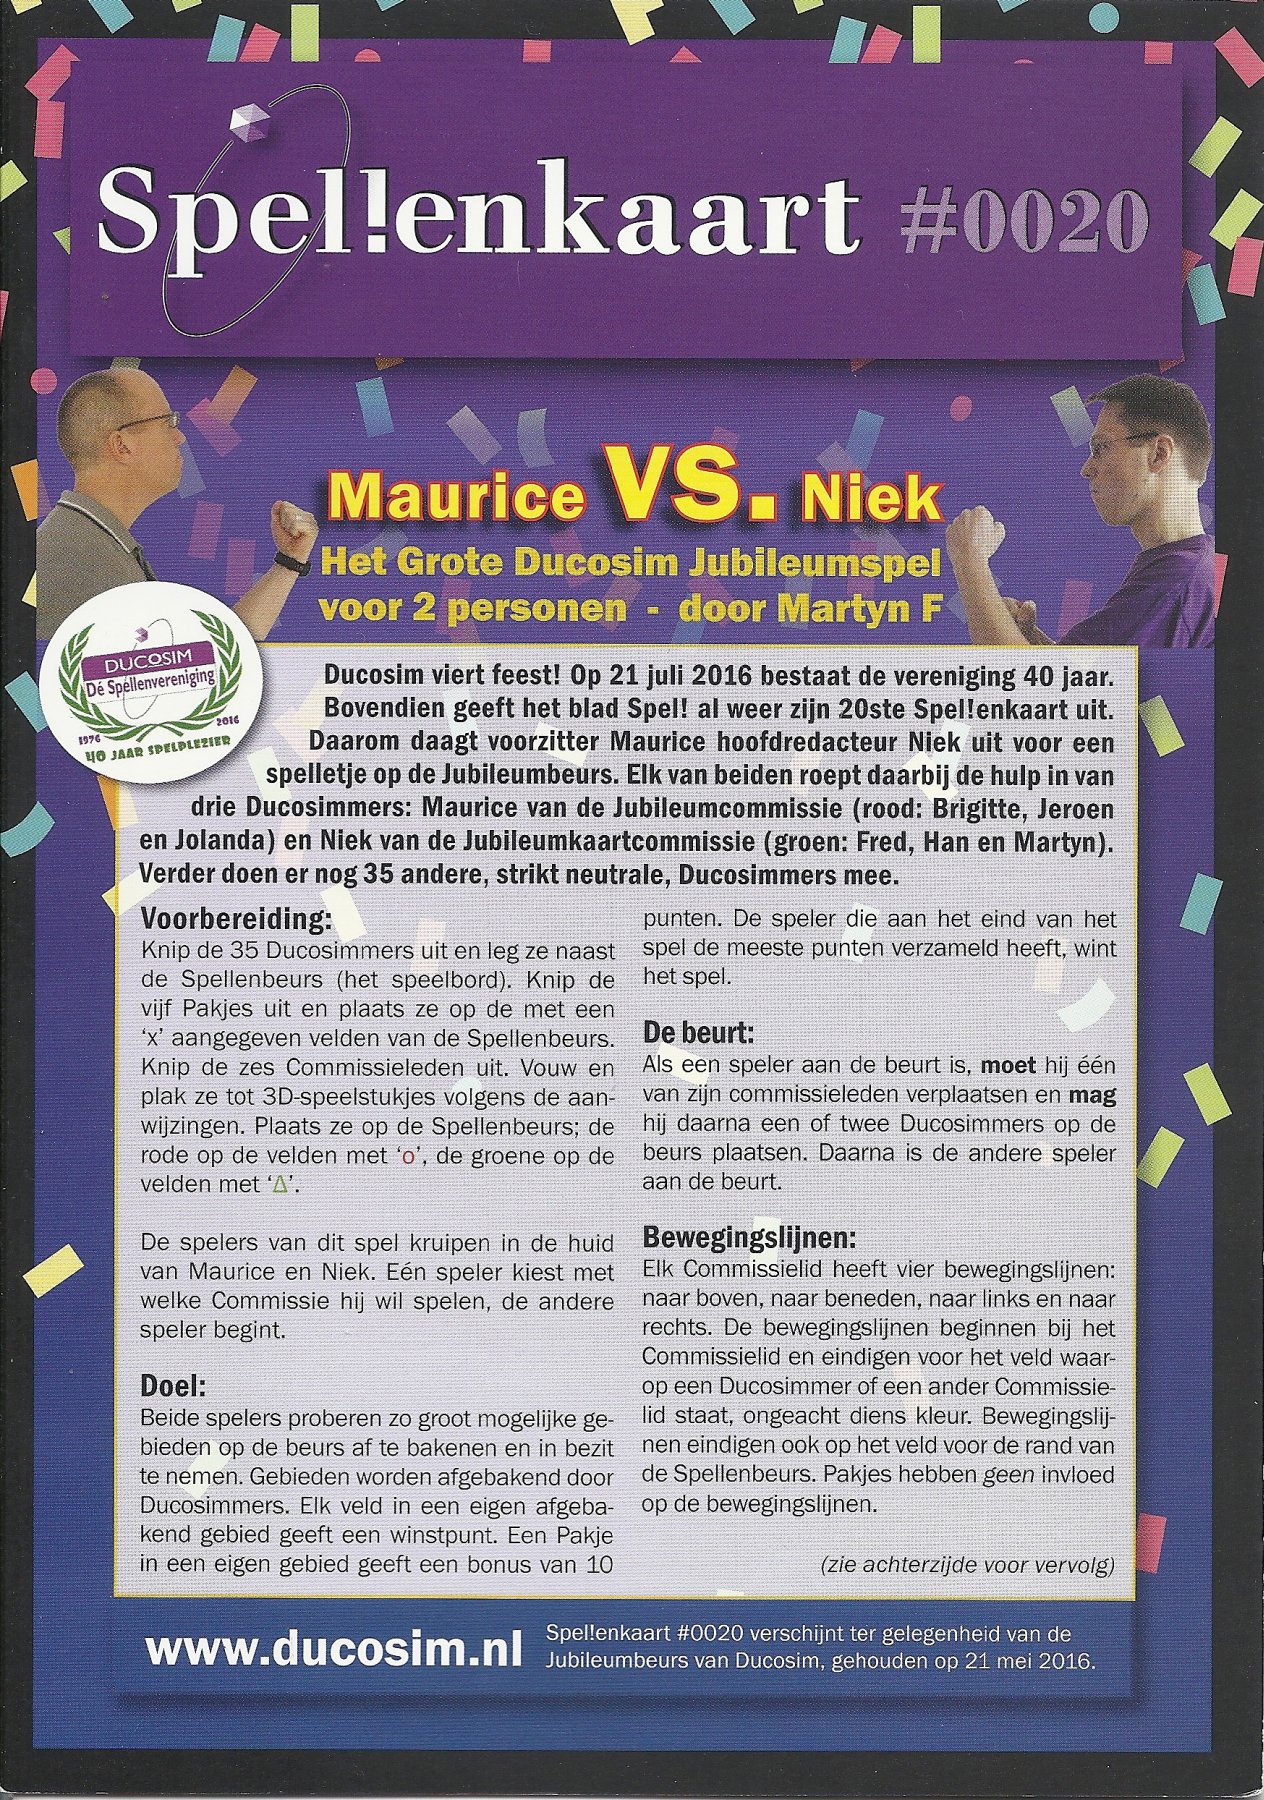 Spellenkaart #0020: Maurice VS. Niek